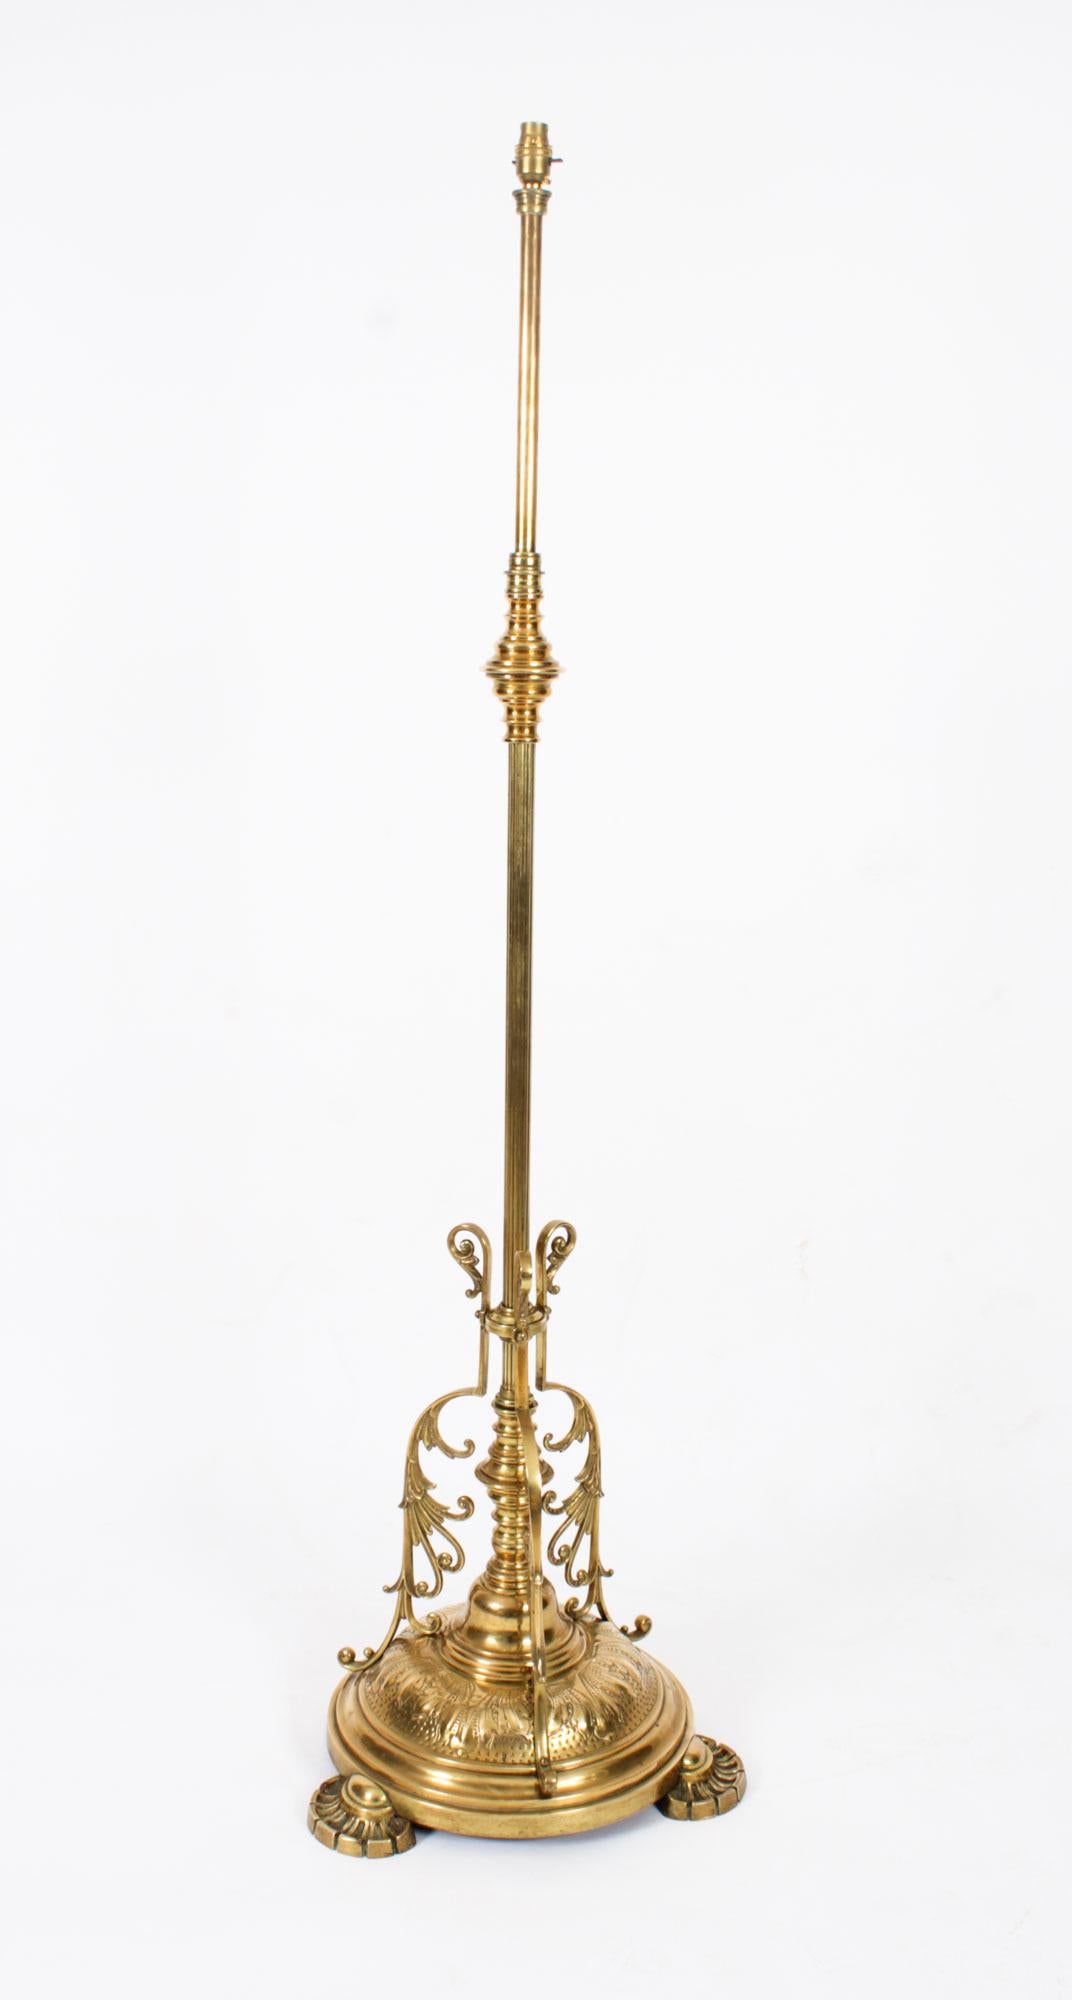 Il s'agit d'un très beau lampadaire ancien en laiton de la fin de l'époque victorienne, converti à l'électricité, datant d'environ 1890, et d'une qualité digne d'une exposition.

Cette lampe splendide est dotée d'une colonne cylindrique à